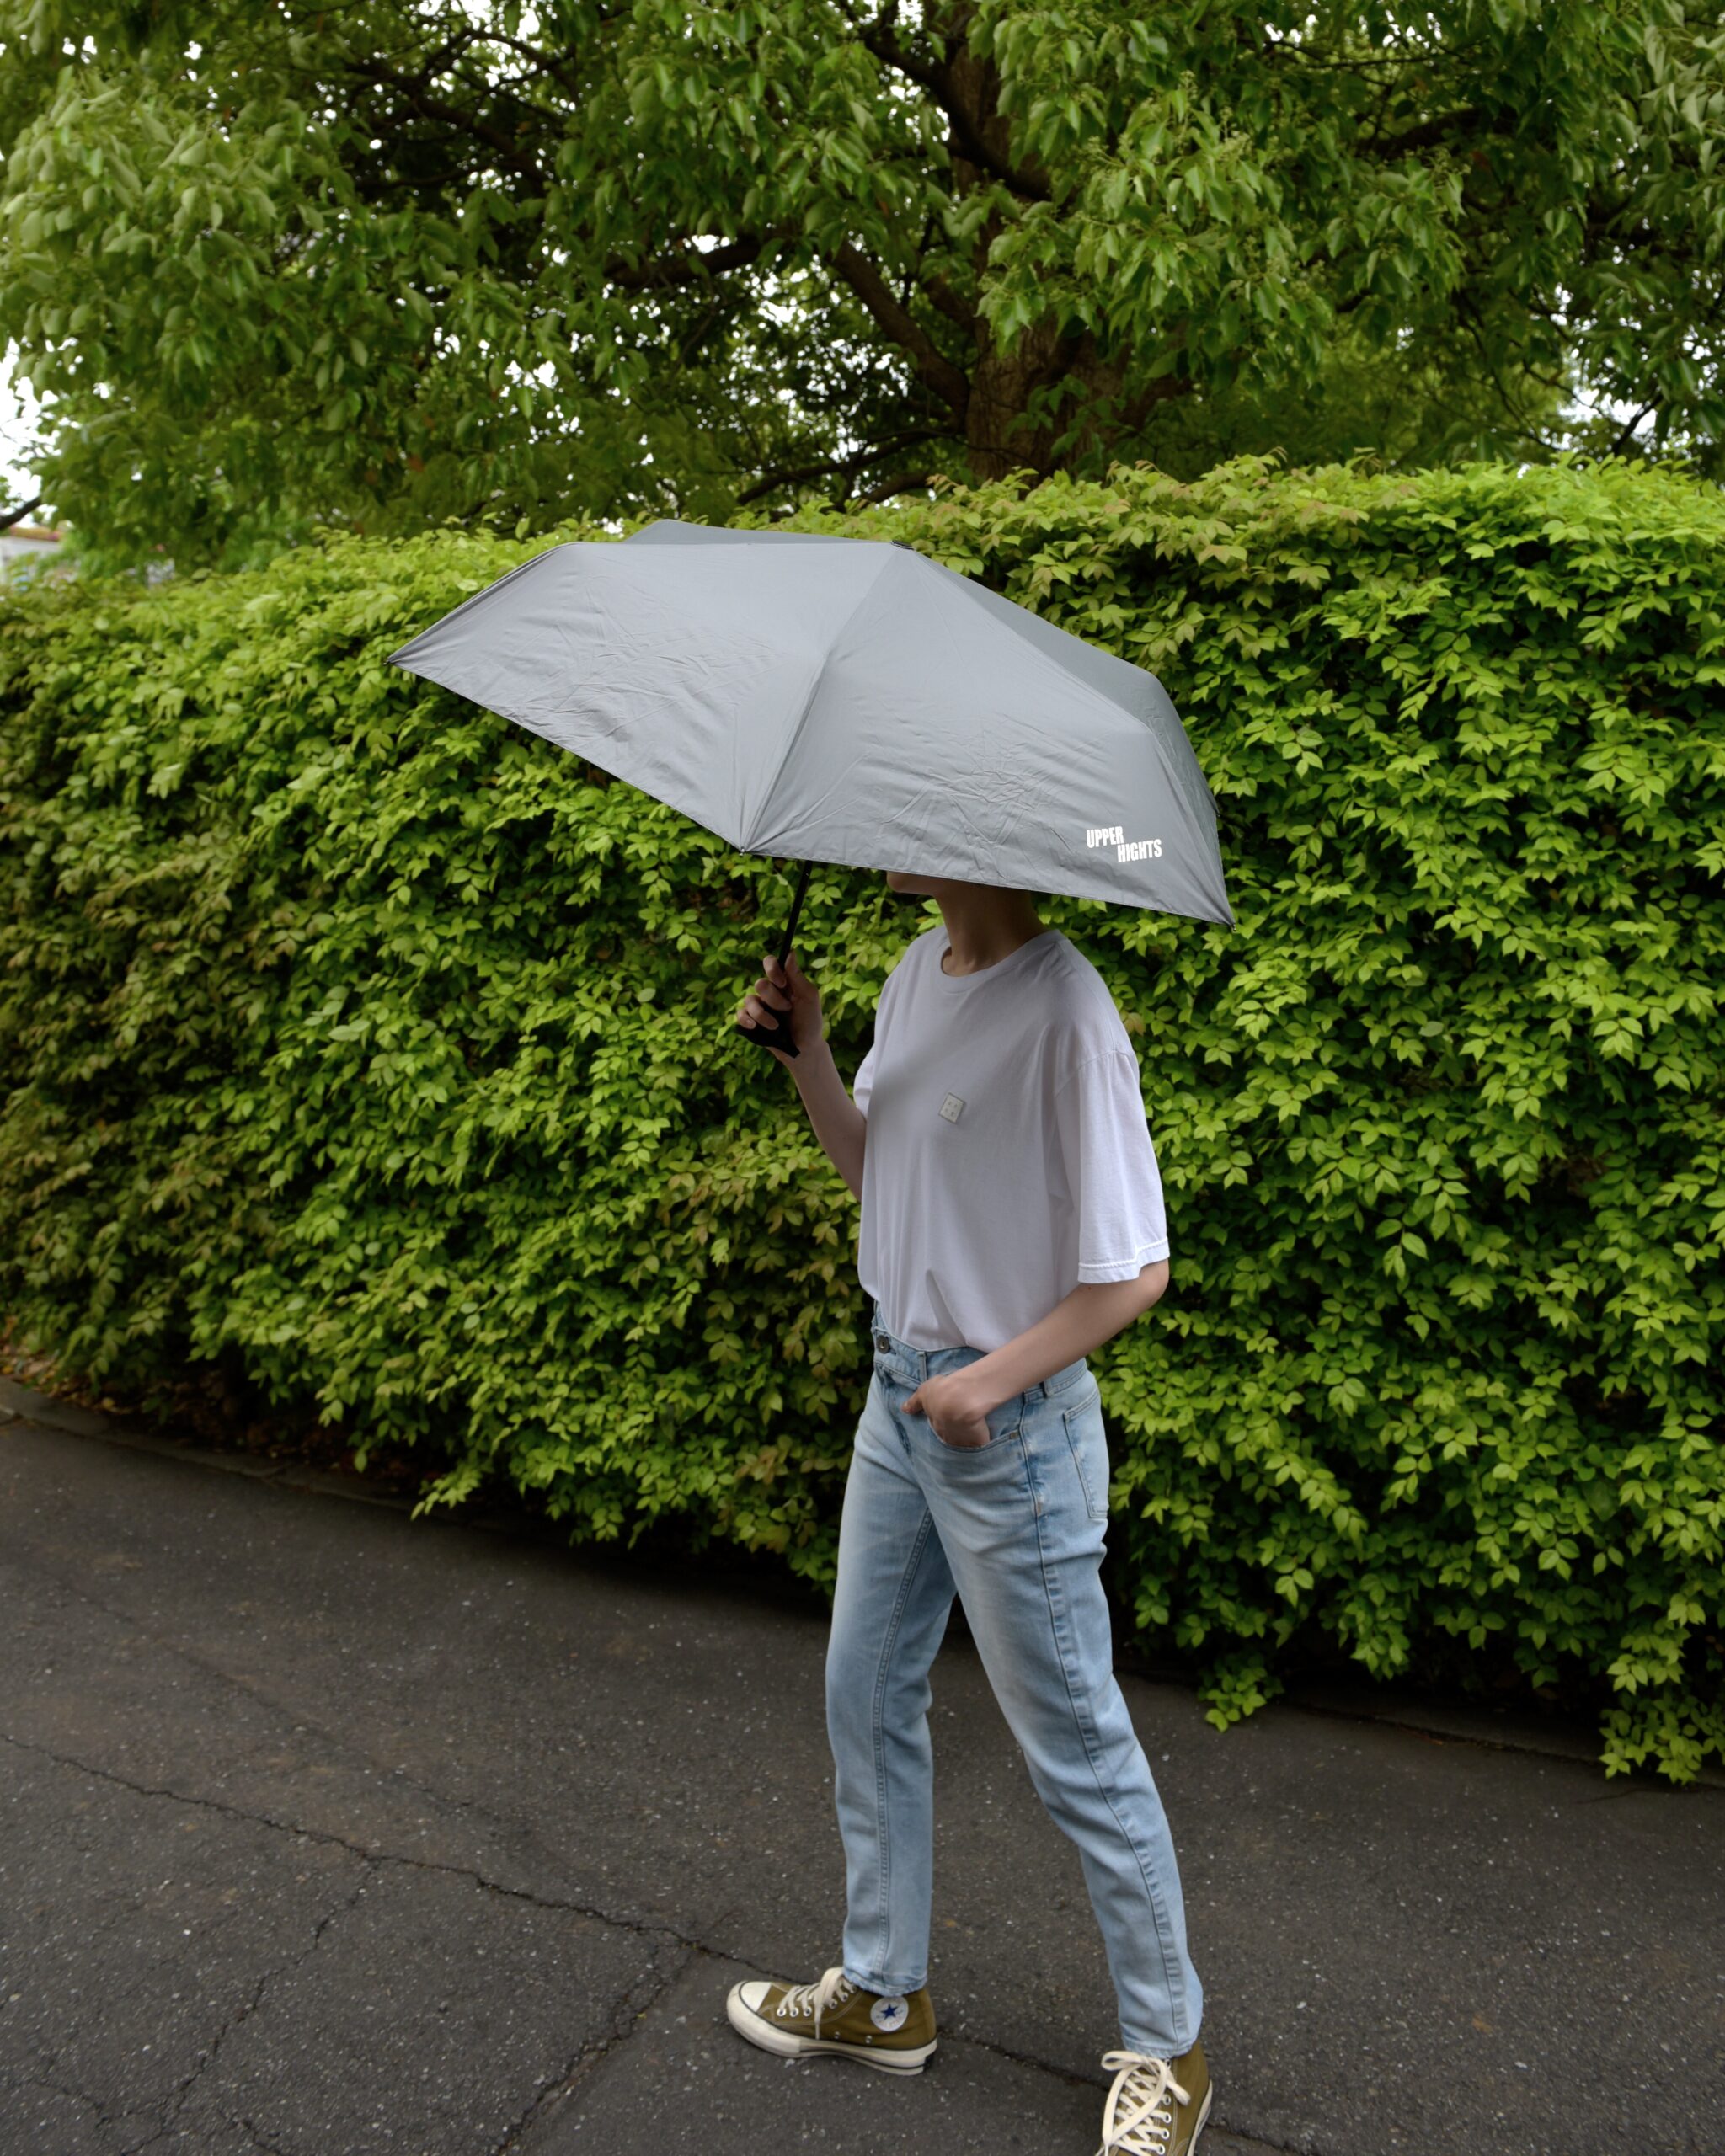 晴雨兼用/UVカット/高機能傘/雨の日/梅雨入り/傘おしゃれ/アッパーハイツ傘/upperhights umbrella